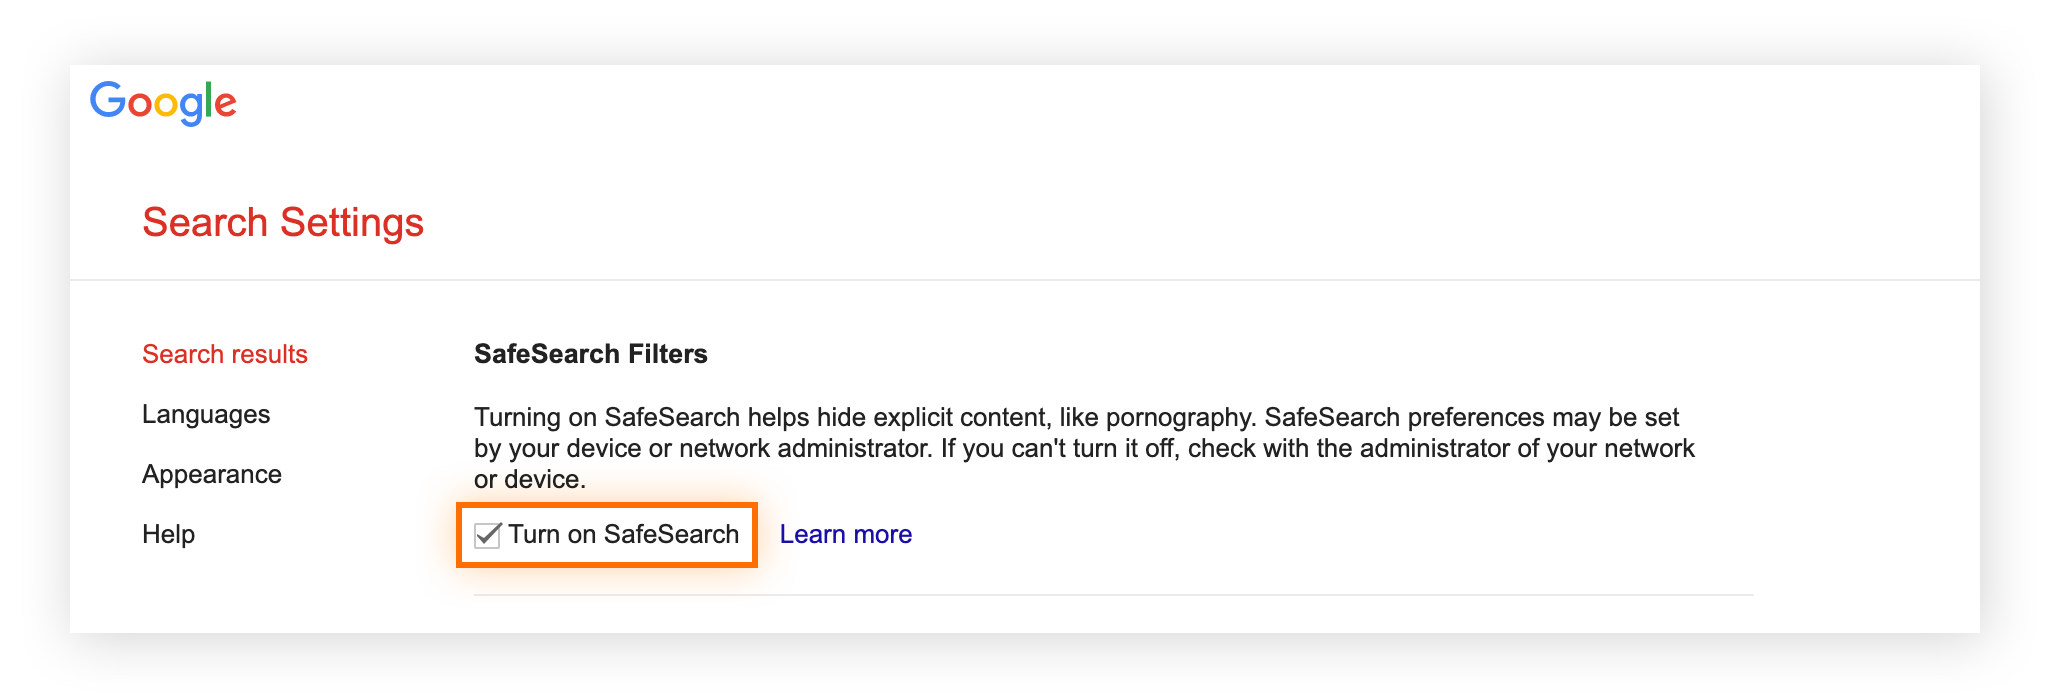 Verwalten der SafeSearch-Einstellungen auf Ebene des Benutzerkontos über die Google-Sucheinstellungen.